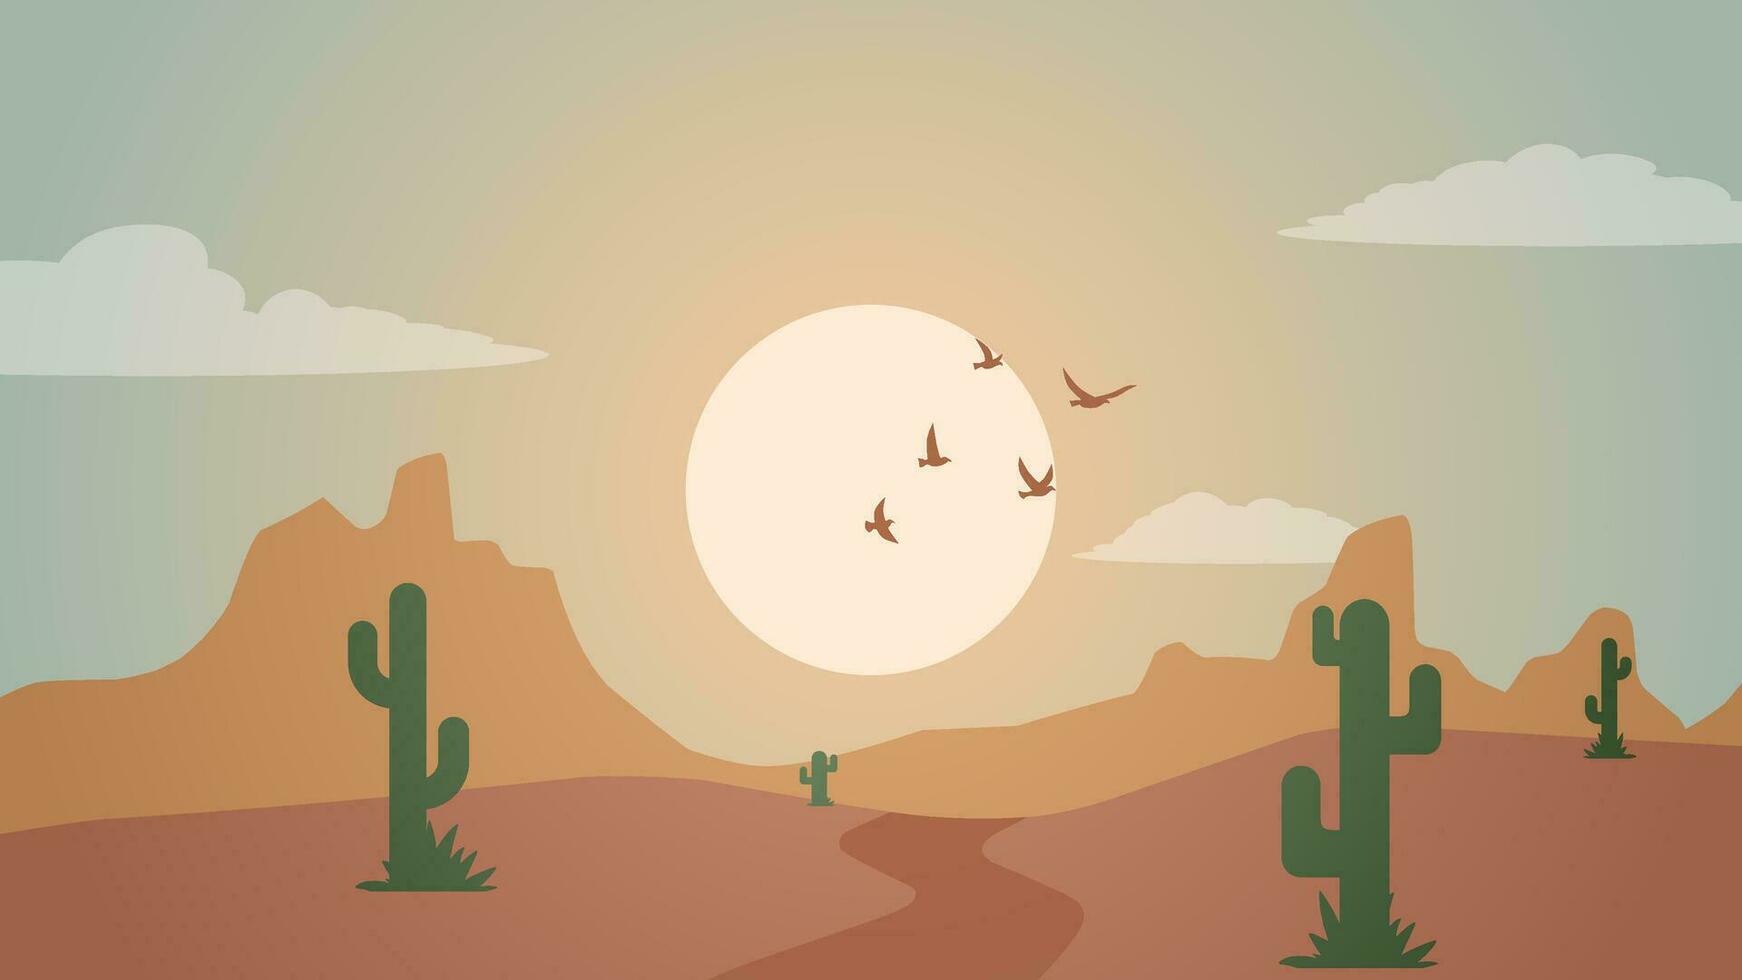 öken- landskap vektor illustration. landskap av sten öken- med kaktus och flock av fåglar. vild väst öken- landskap för illustration, bakgrund eller tapet